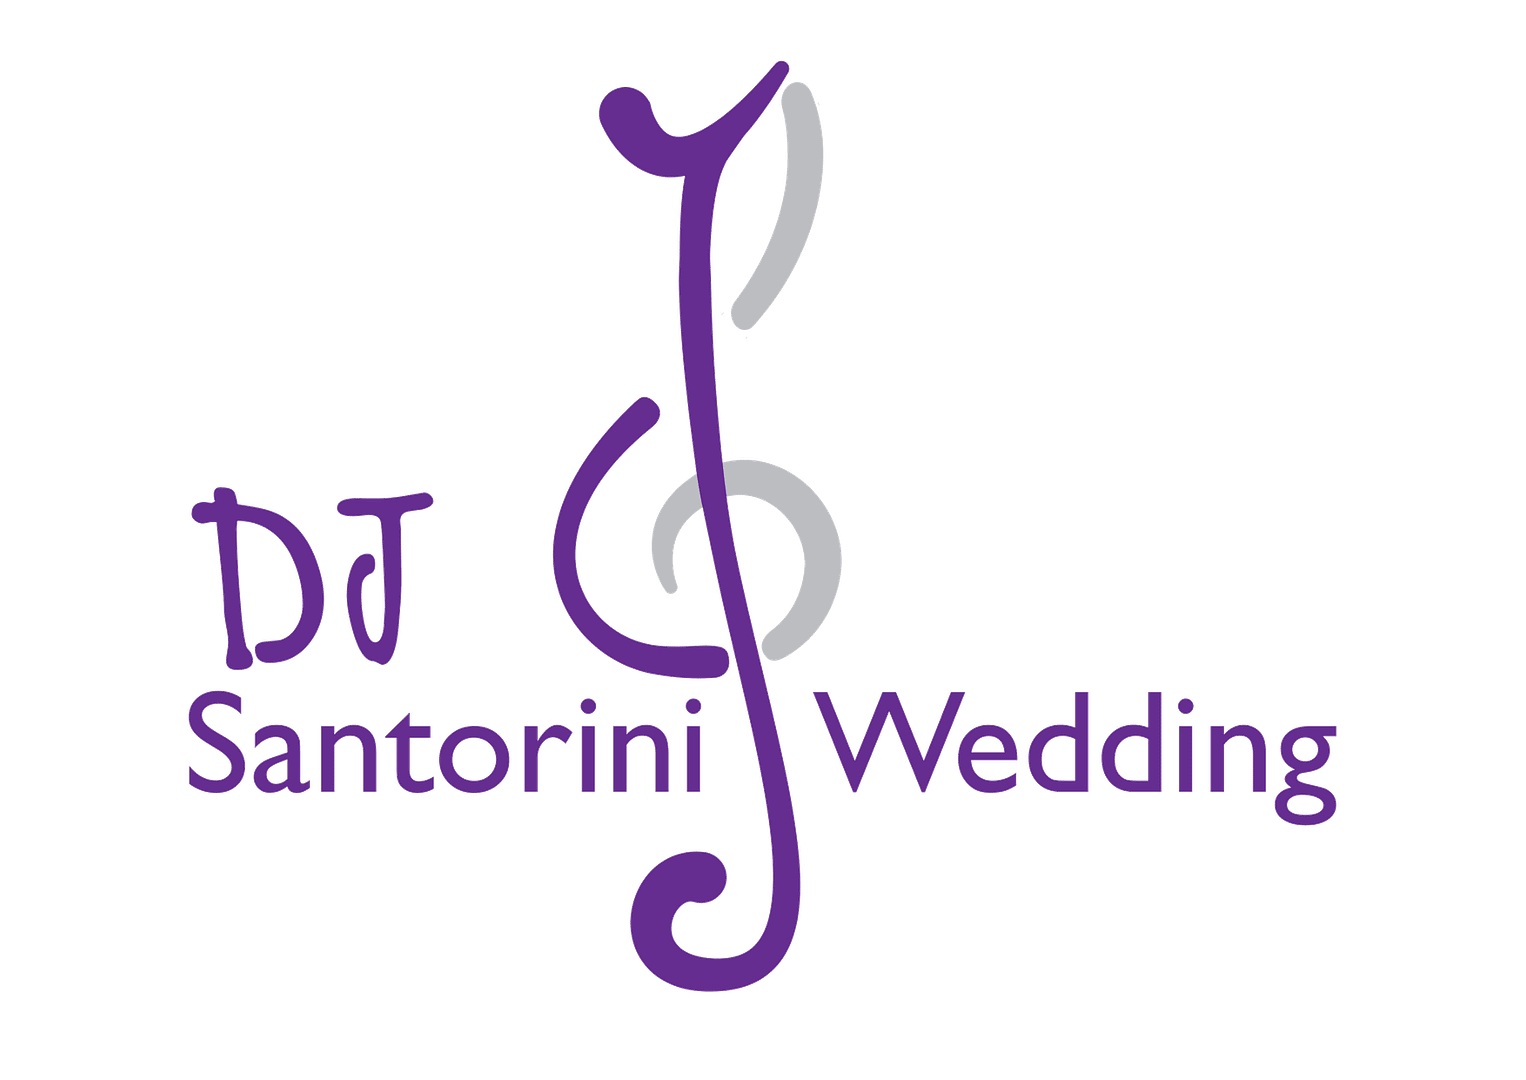 dj santorini wedding